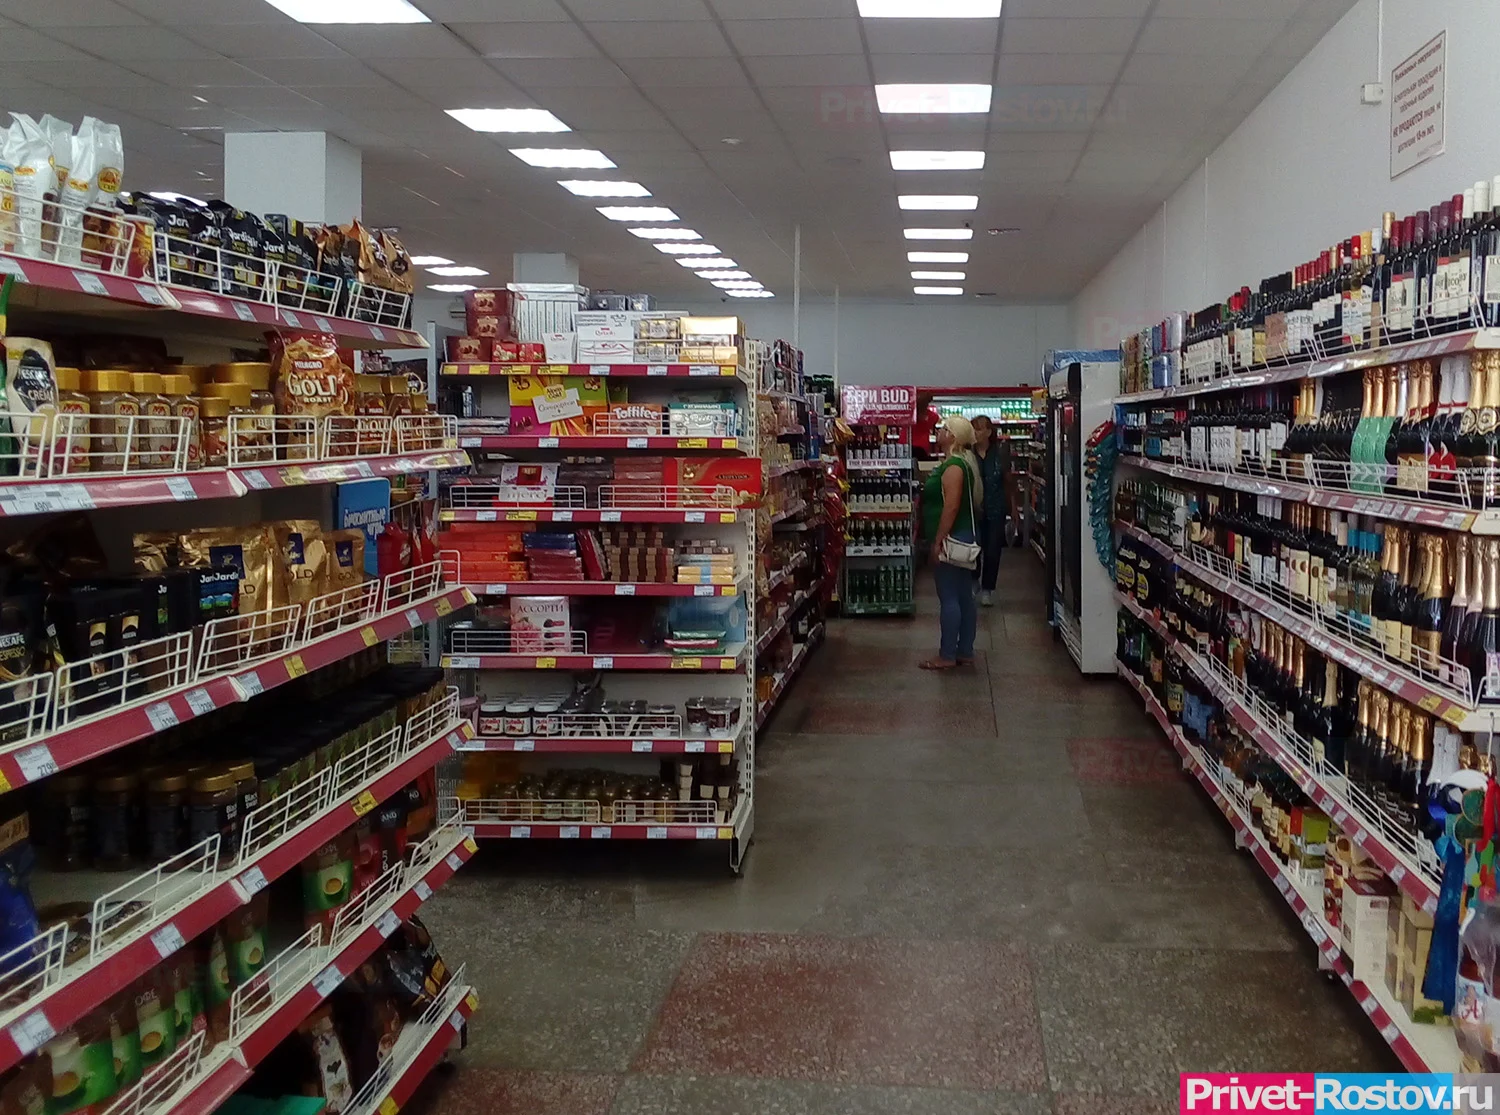 Ростовчане заявили о драке в супермаркете из-за осьминогов